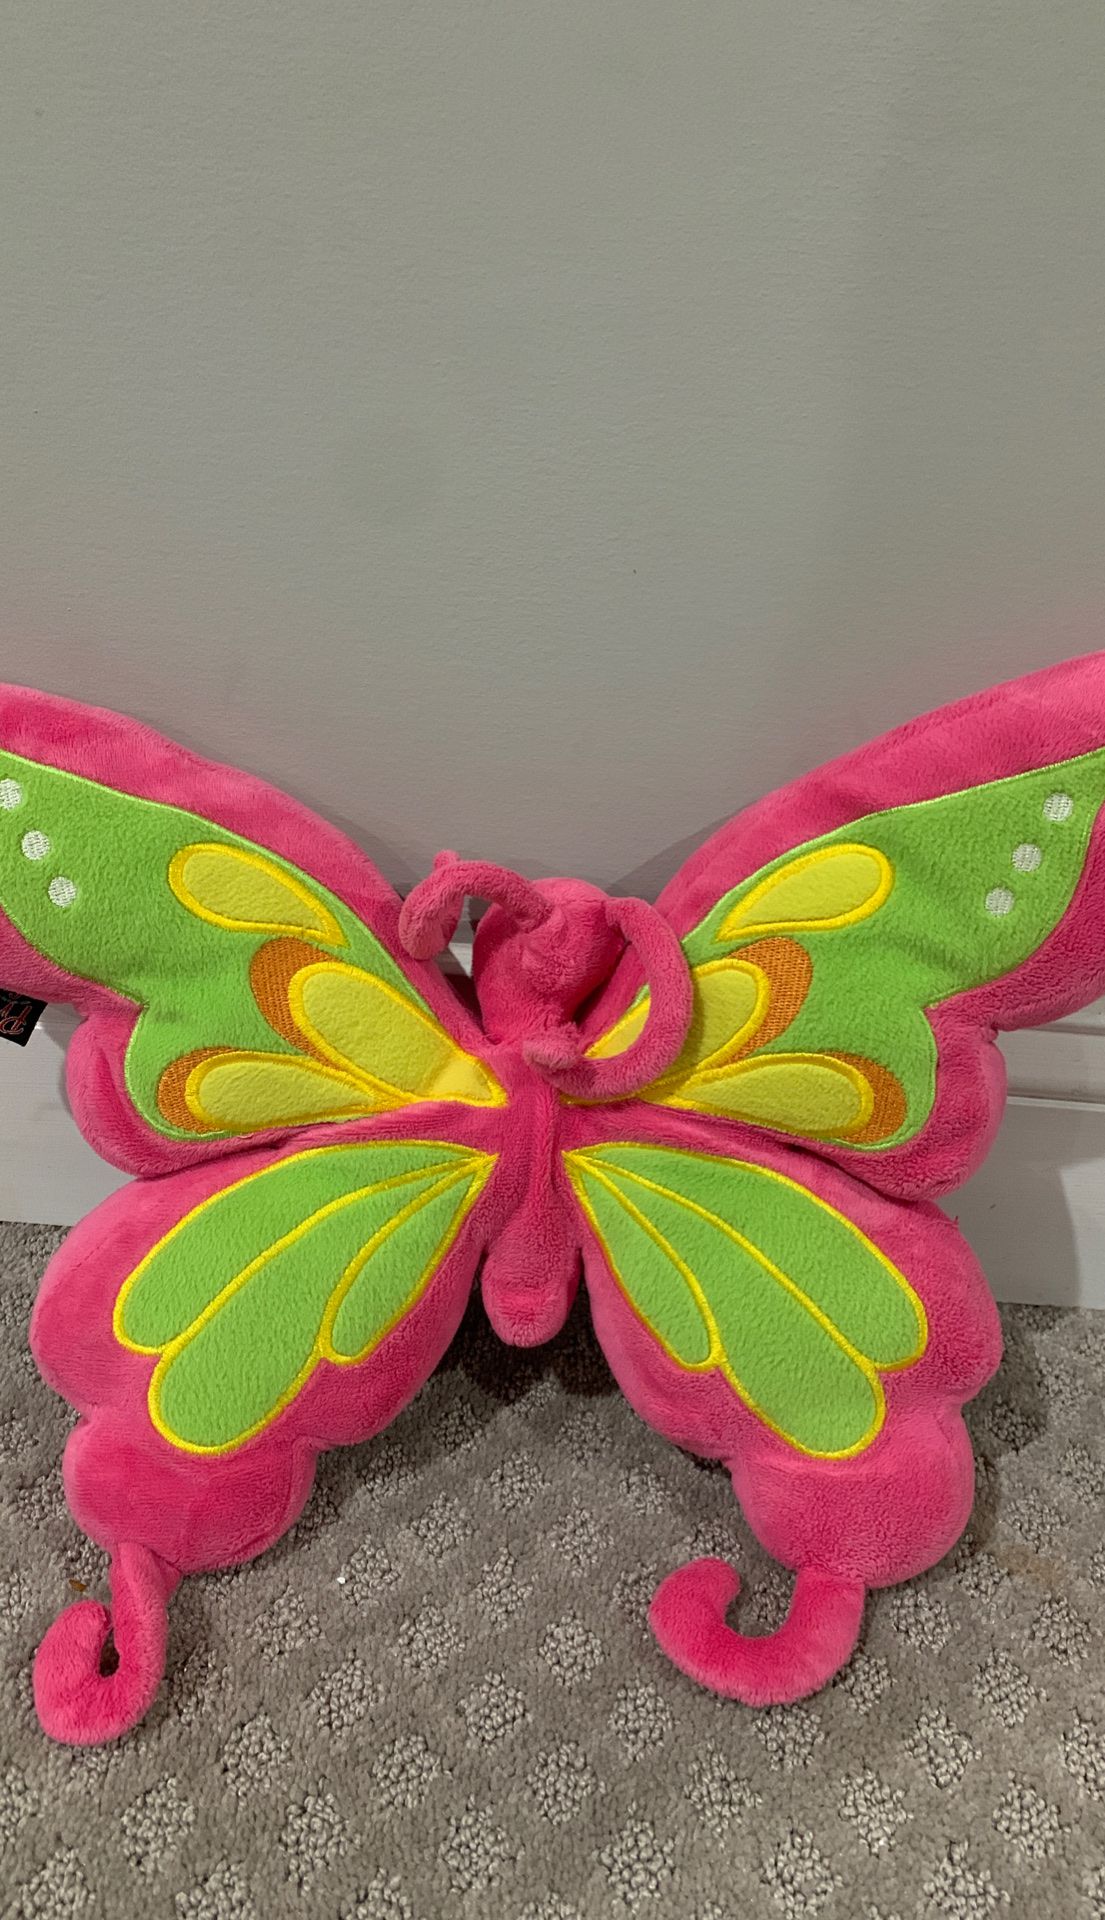 Butterfly stuffed animal